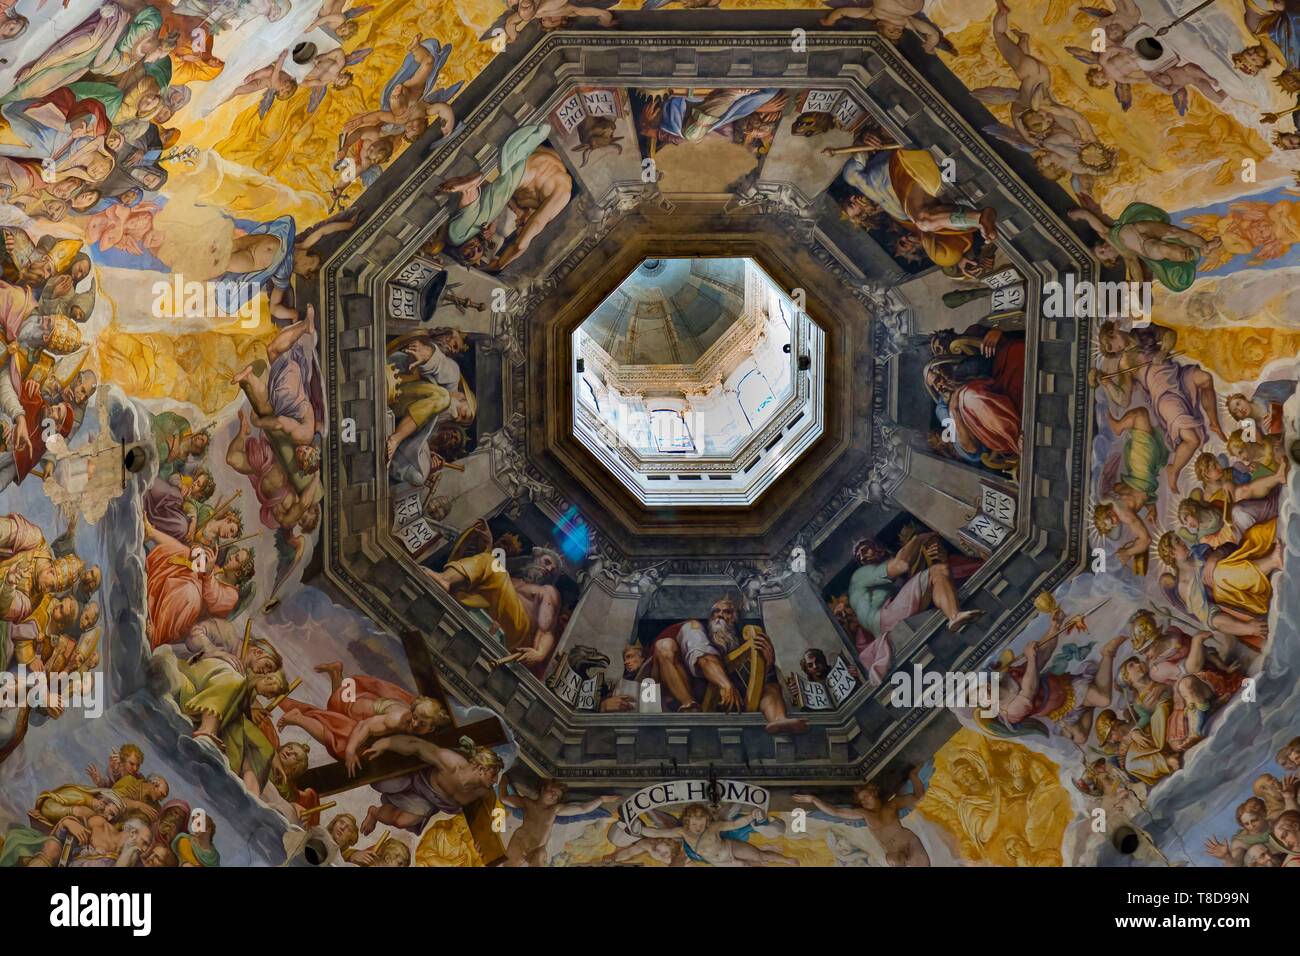 Italien, Toskana, Florenz, die historische Altstadt als Weltkulturerbe von der UNESCO, der Piazza del Duomo, Kathedrale von Santa Maria Del Fiore, im Innern der Kuppel Stockfoto